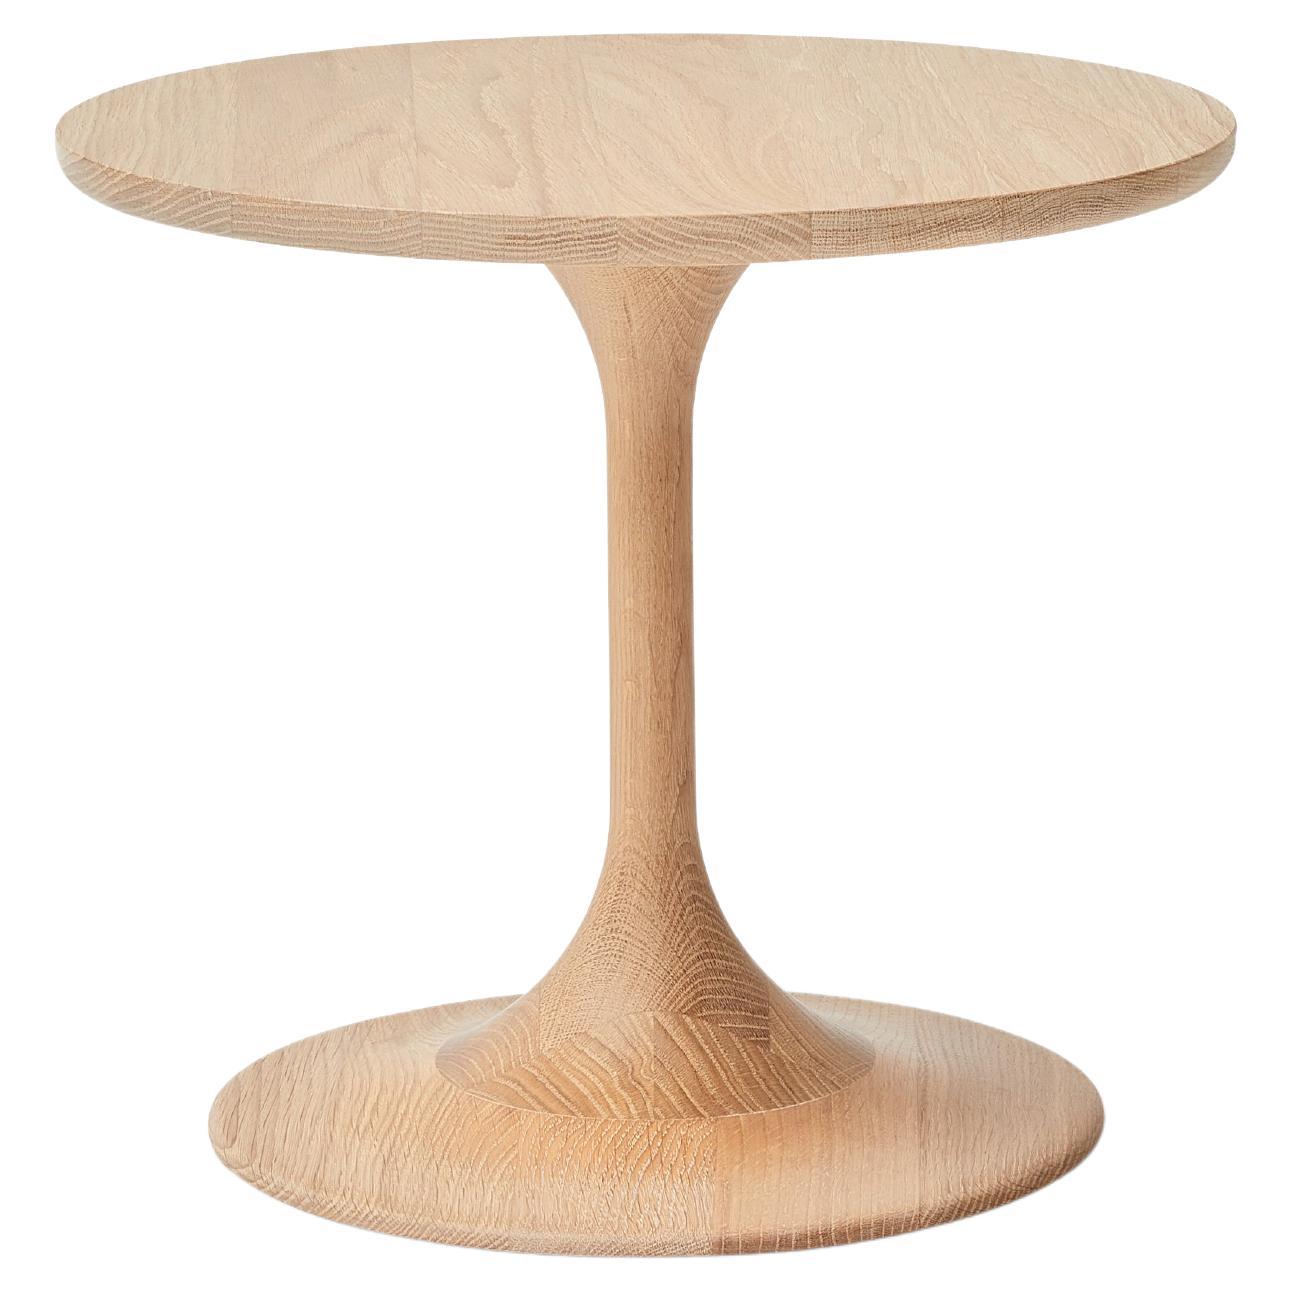 MG203 side table in oak by Malte Gormsen Designed by Space Copenhagen For Sale